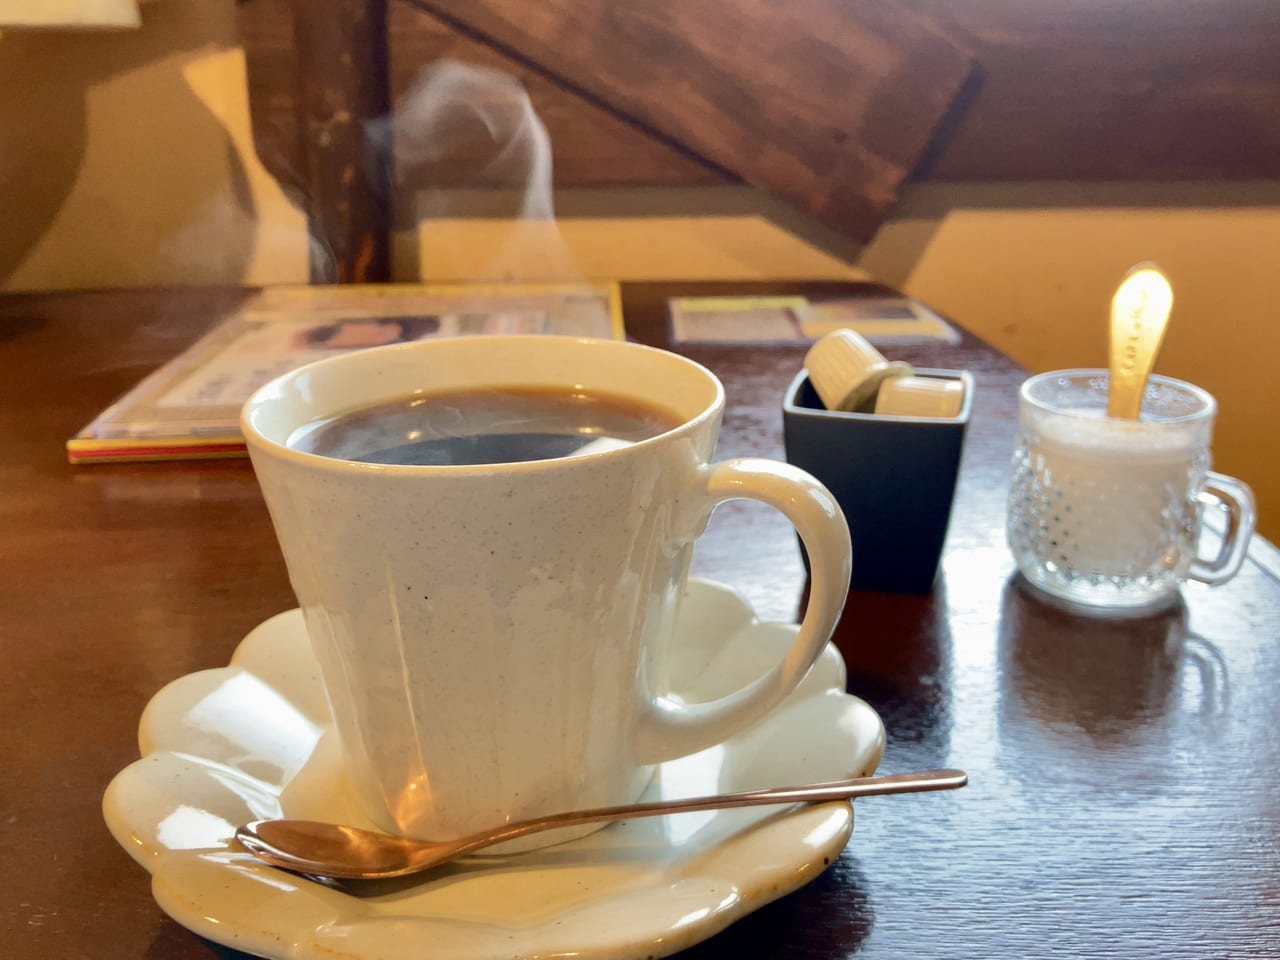 こだわりのコーヒーと魅力的なスイーツが楽しめるカフェ「cafe vivid life」に行ってみた